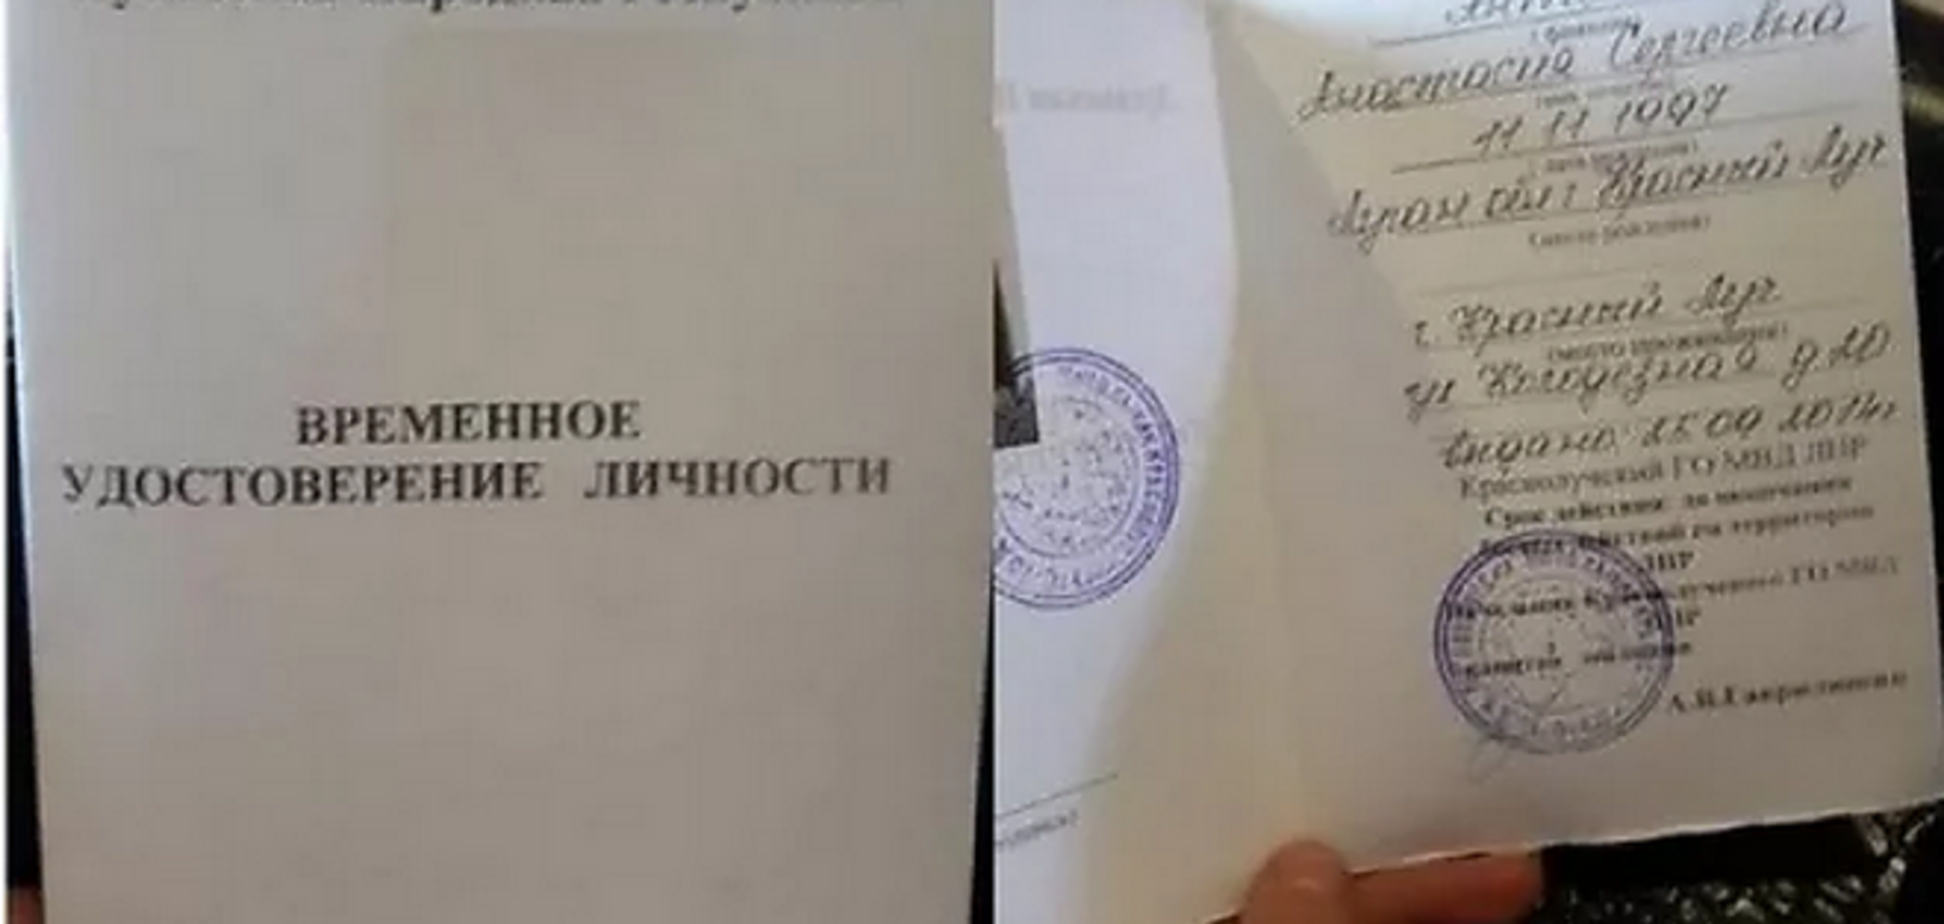 Террористы начали выдавать 'временные удостоверения гражданина ЛНР'